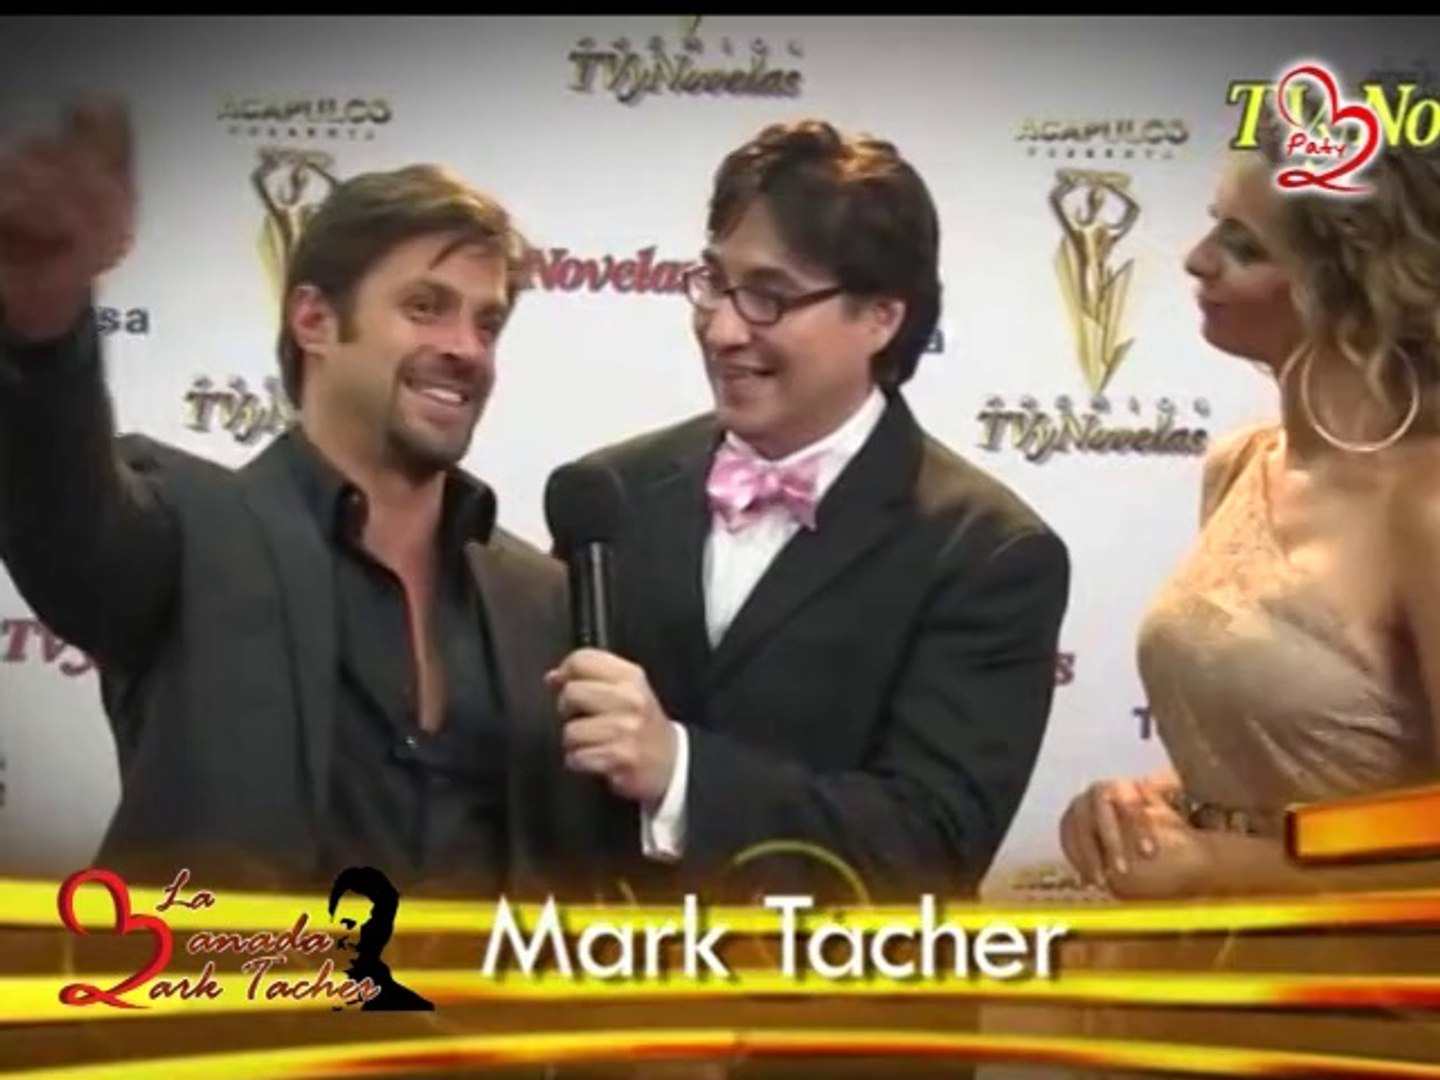 Entrevista al Jefe Mark Tacher en los Premios TV y Novelas. - Vídeo  Dailymotion